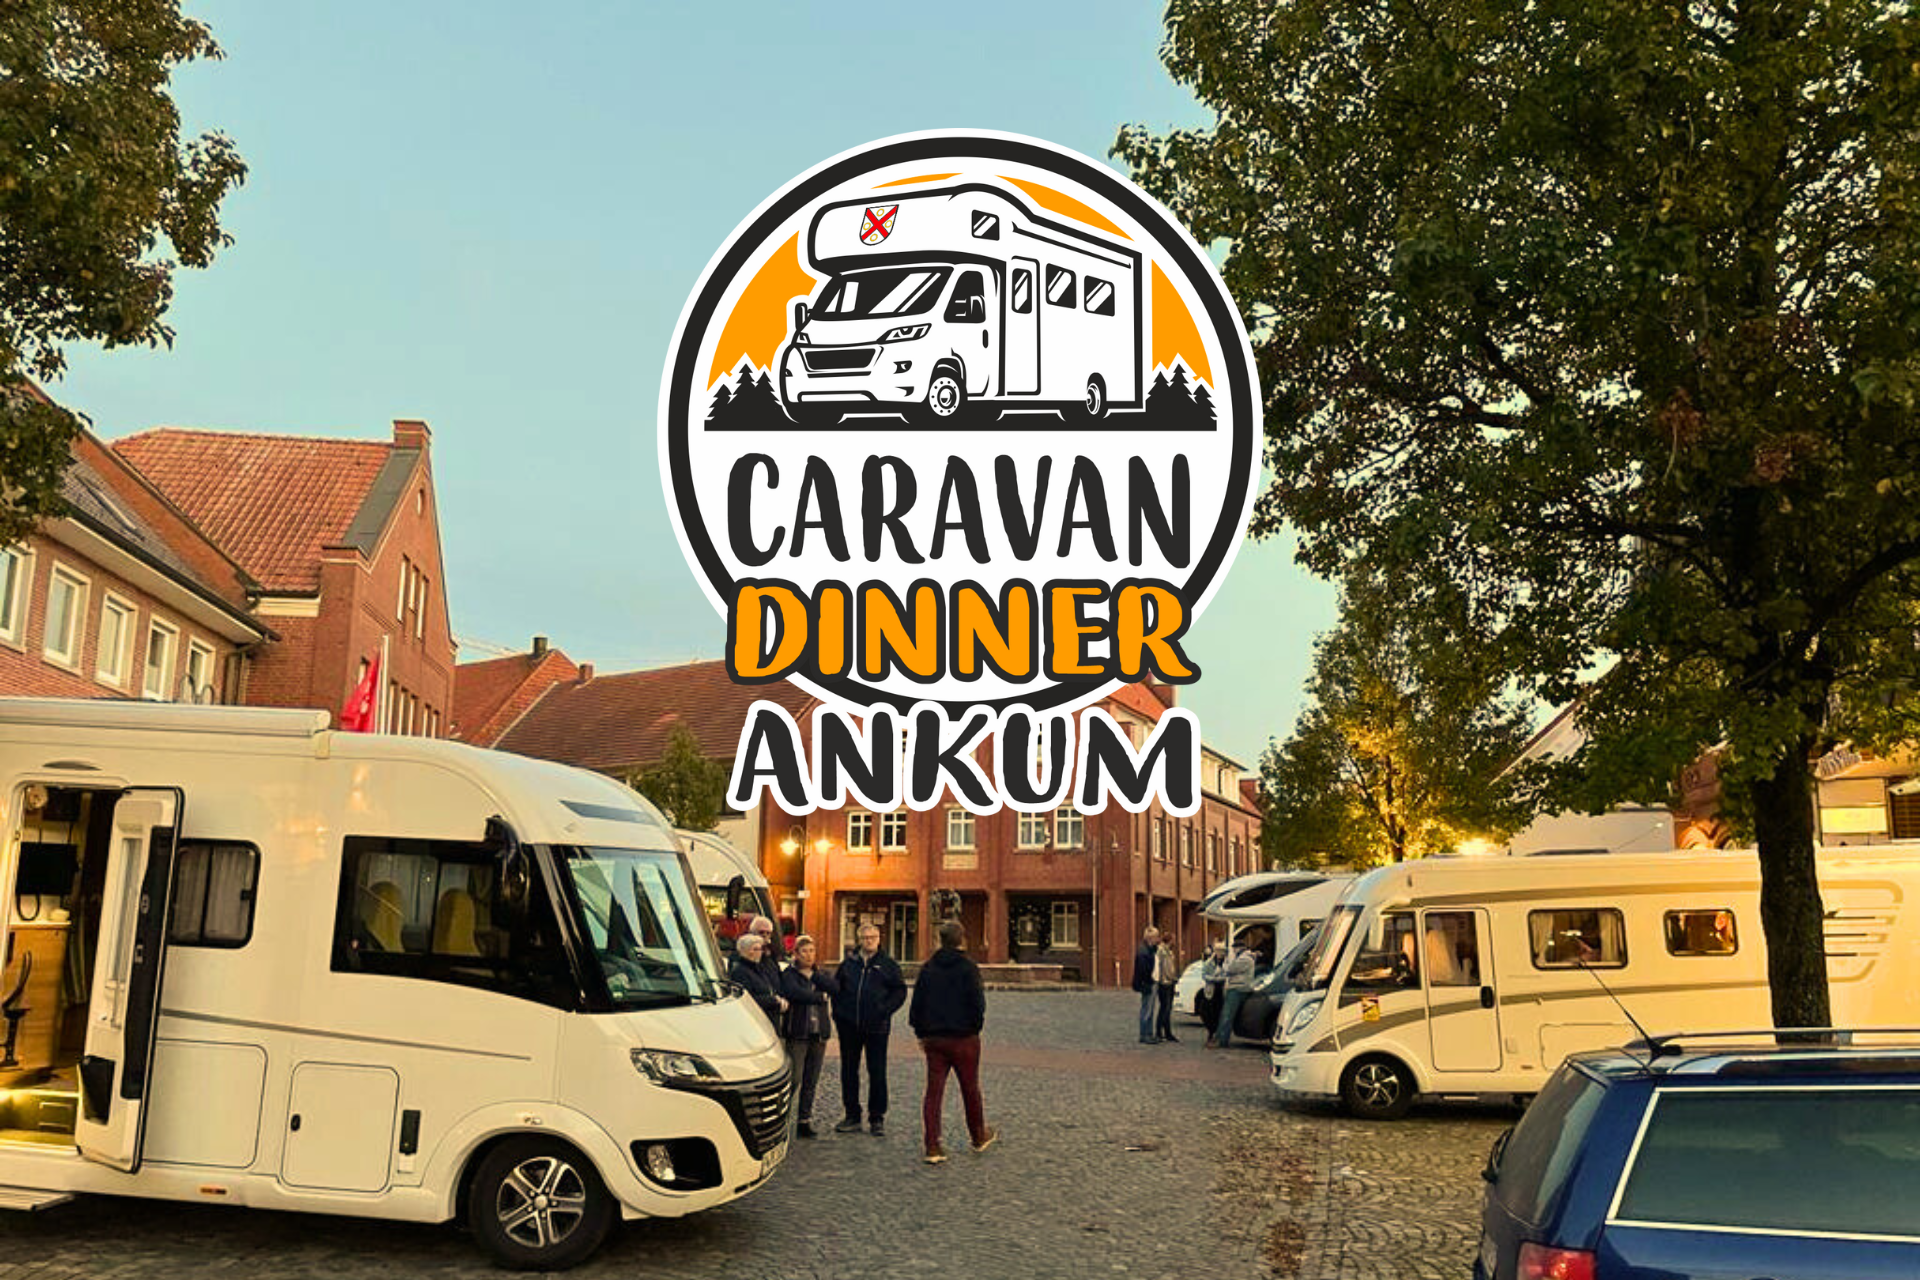 Caravan Dinner Ankum